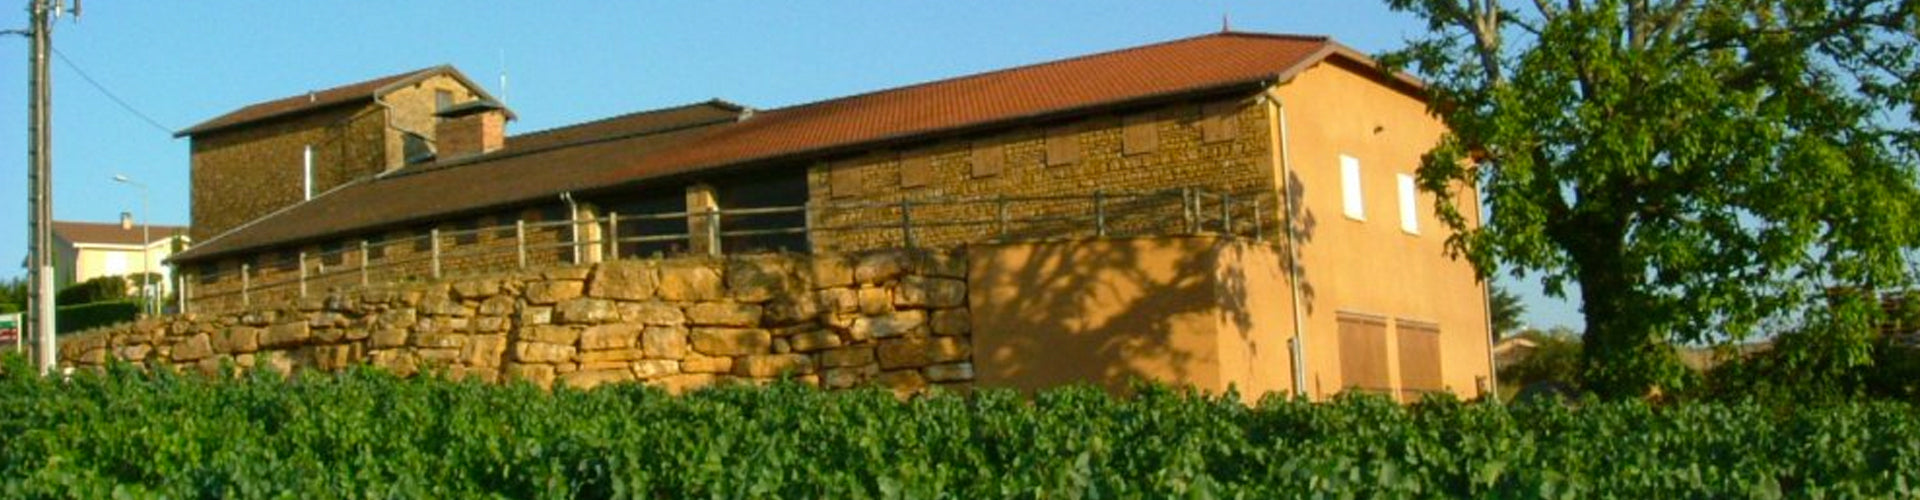 The winery building of Jean-Paul Brun Domaine des Terres Dorrées, Beaujolais